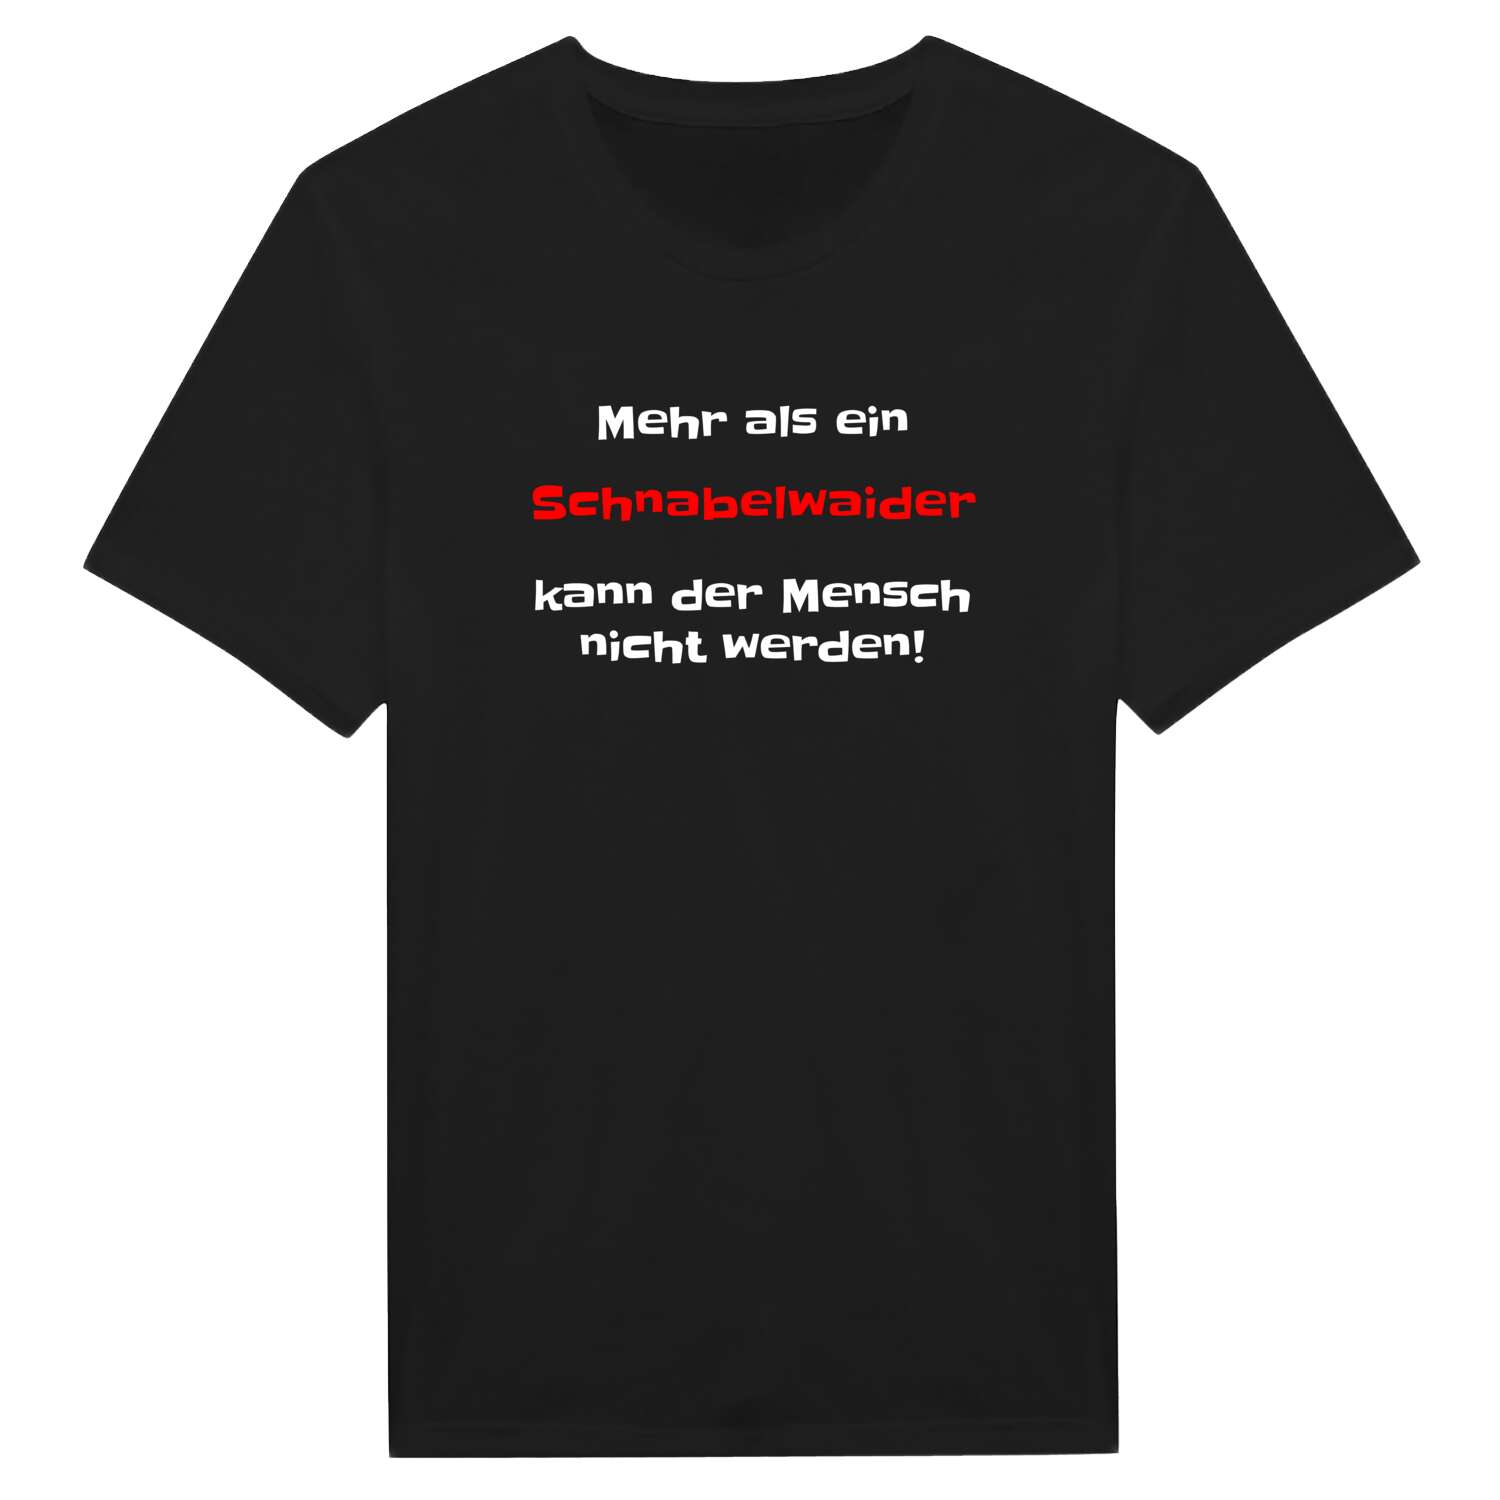 Schnabelwaid T-Shirt »Mehr als ein«